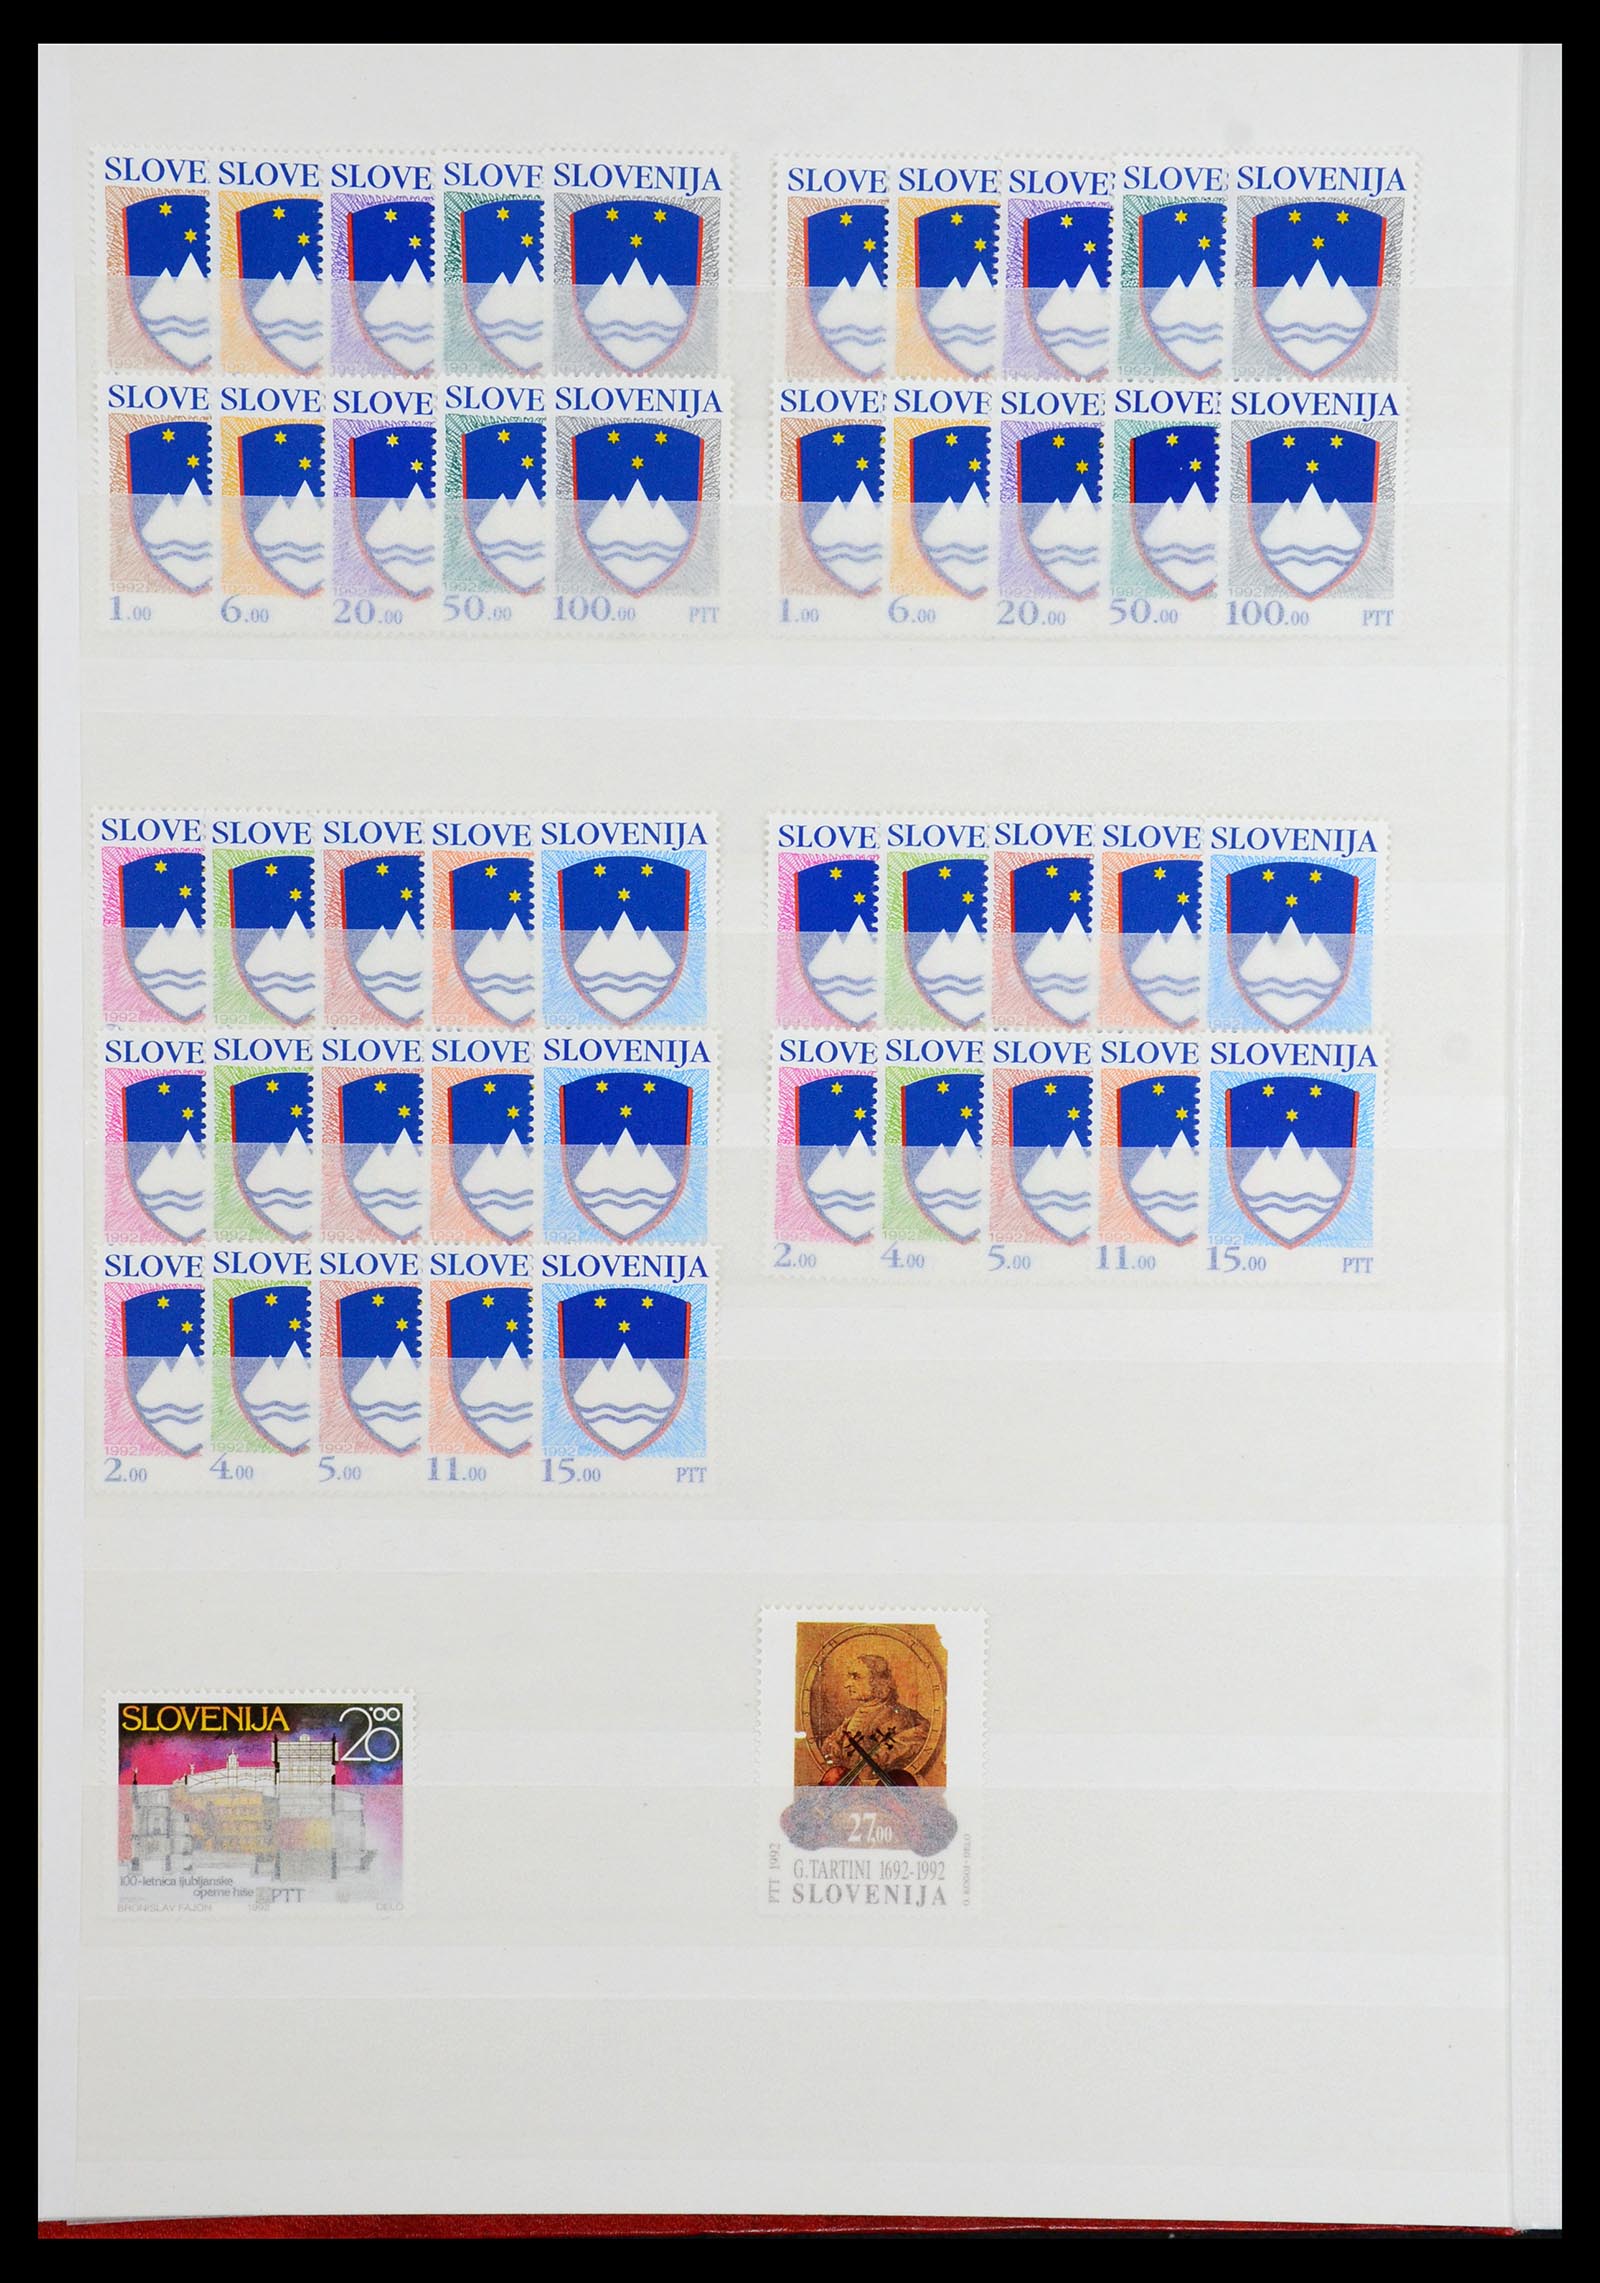 36461 002 - Stamp collection 36461 Slovenia, Croatia and Bosnia-Herzegovina MNH 1991